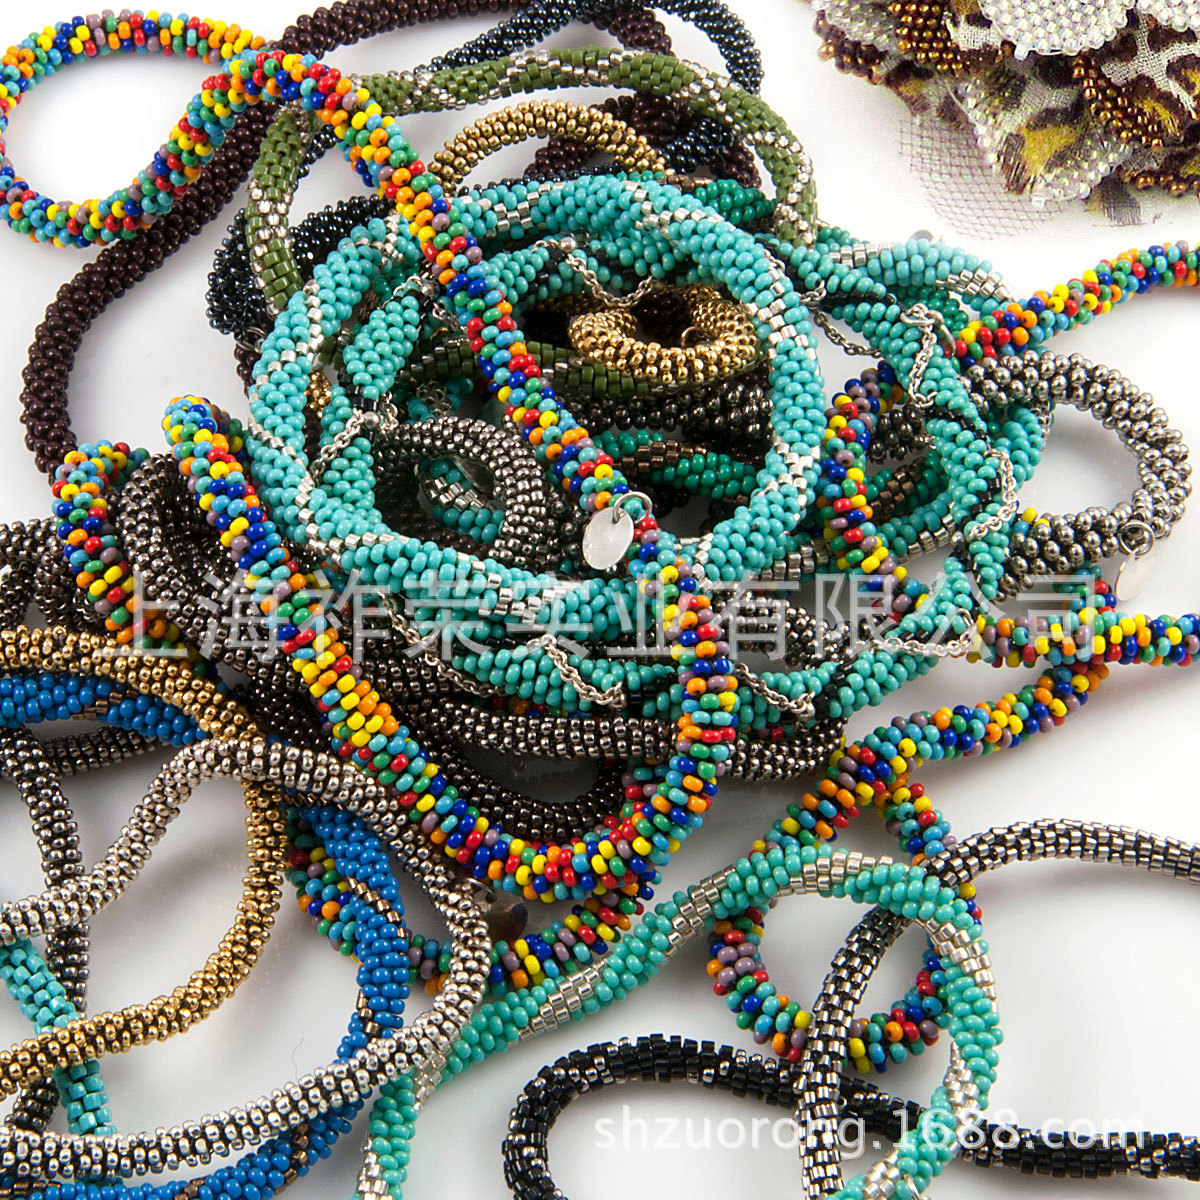 厂家加工编织米珠绳项链 米珠串珠项链 米珠钩织项链 串珠项链